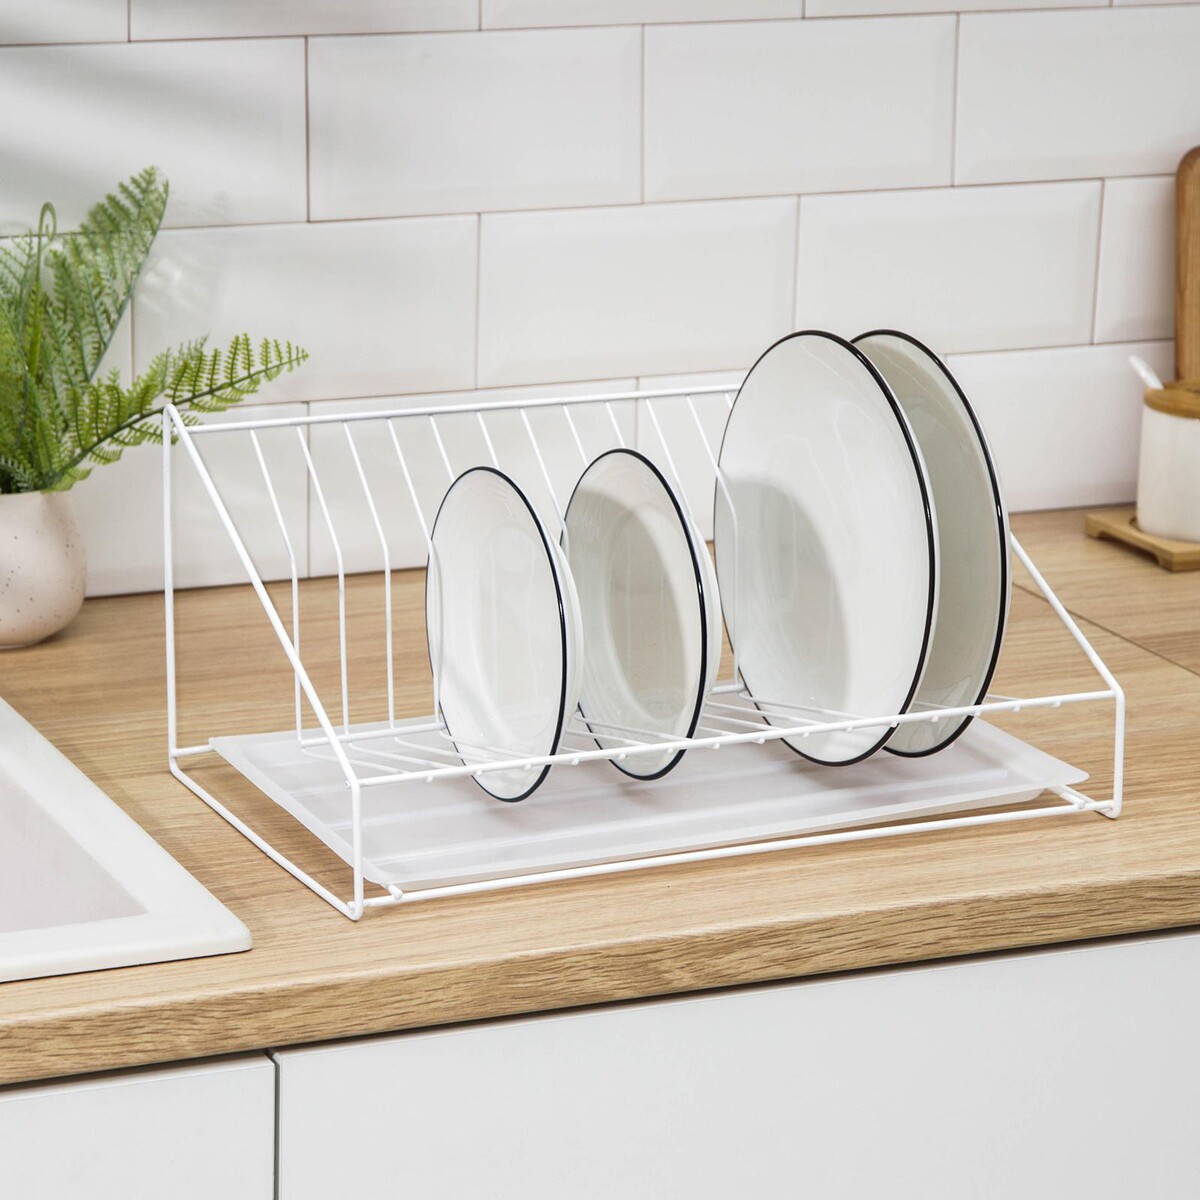 Сушилка для посуды с поддоном, 38×17,5×23,5 см, цвет белый сушилка для посуды с поддоном 38×24×37 см белый